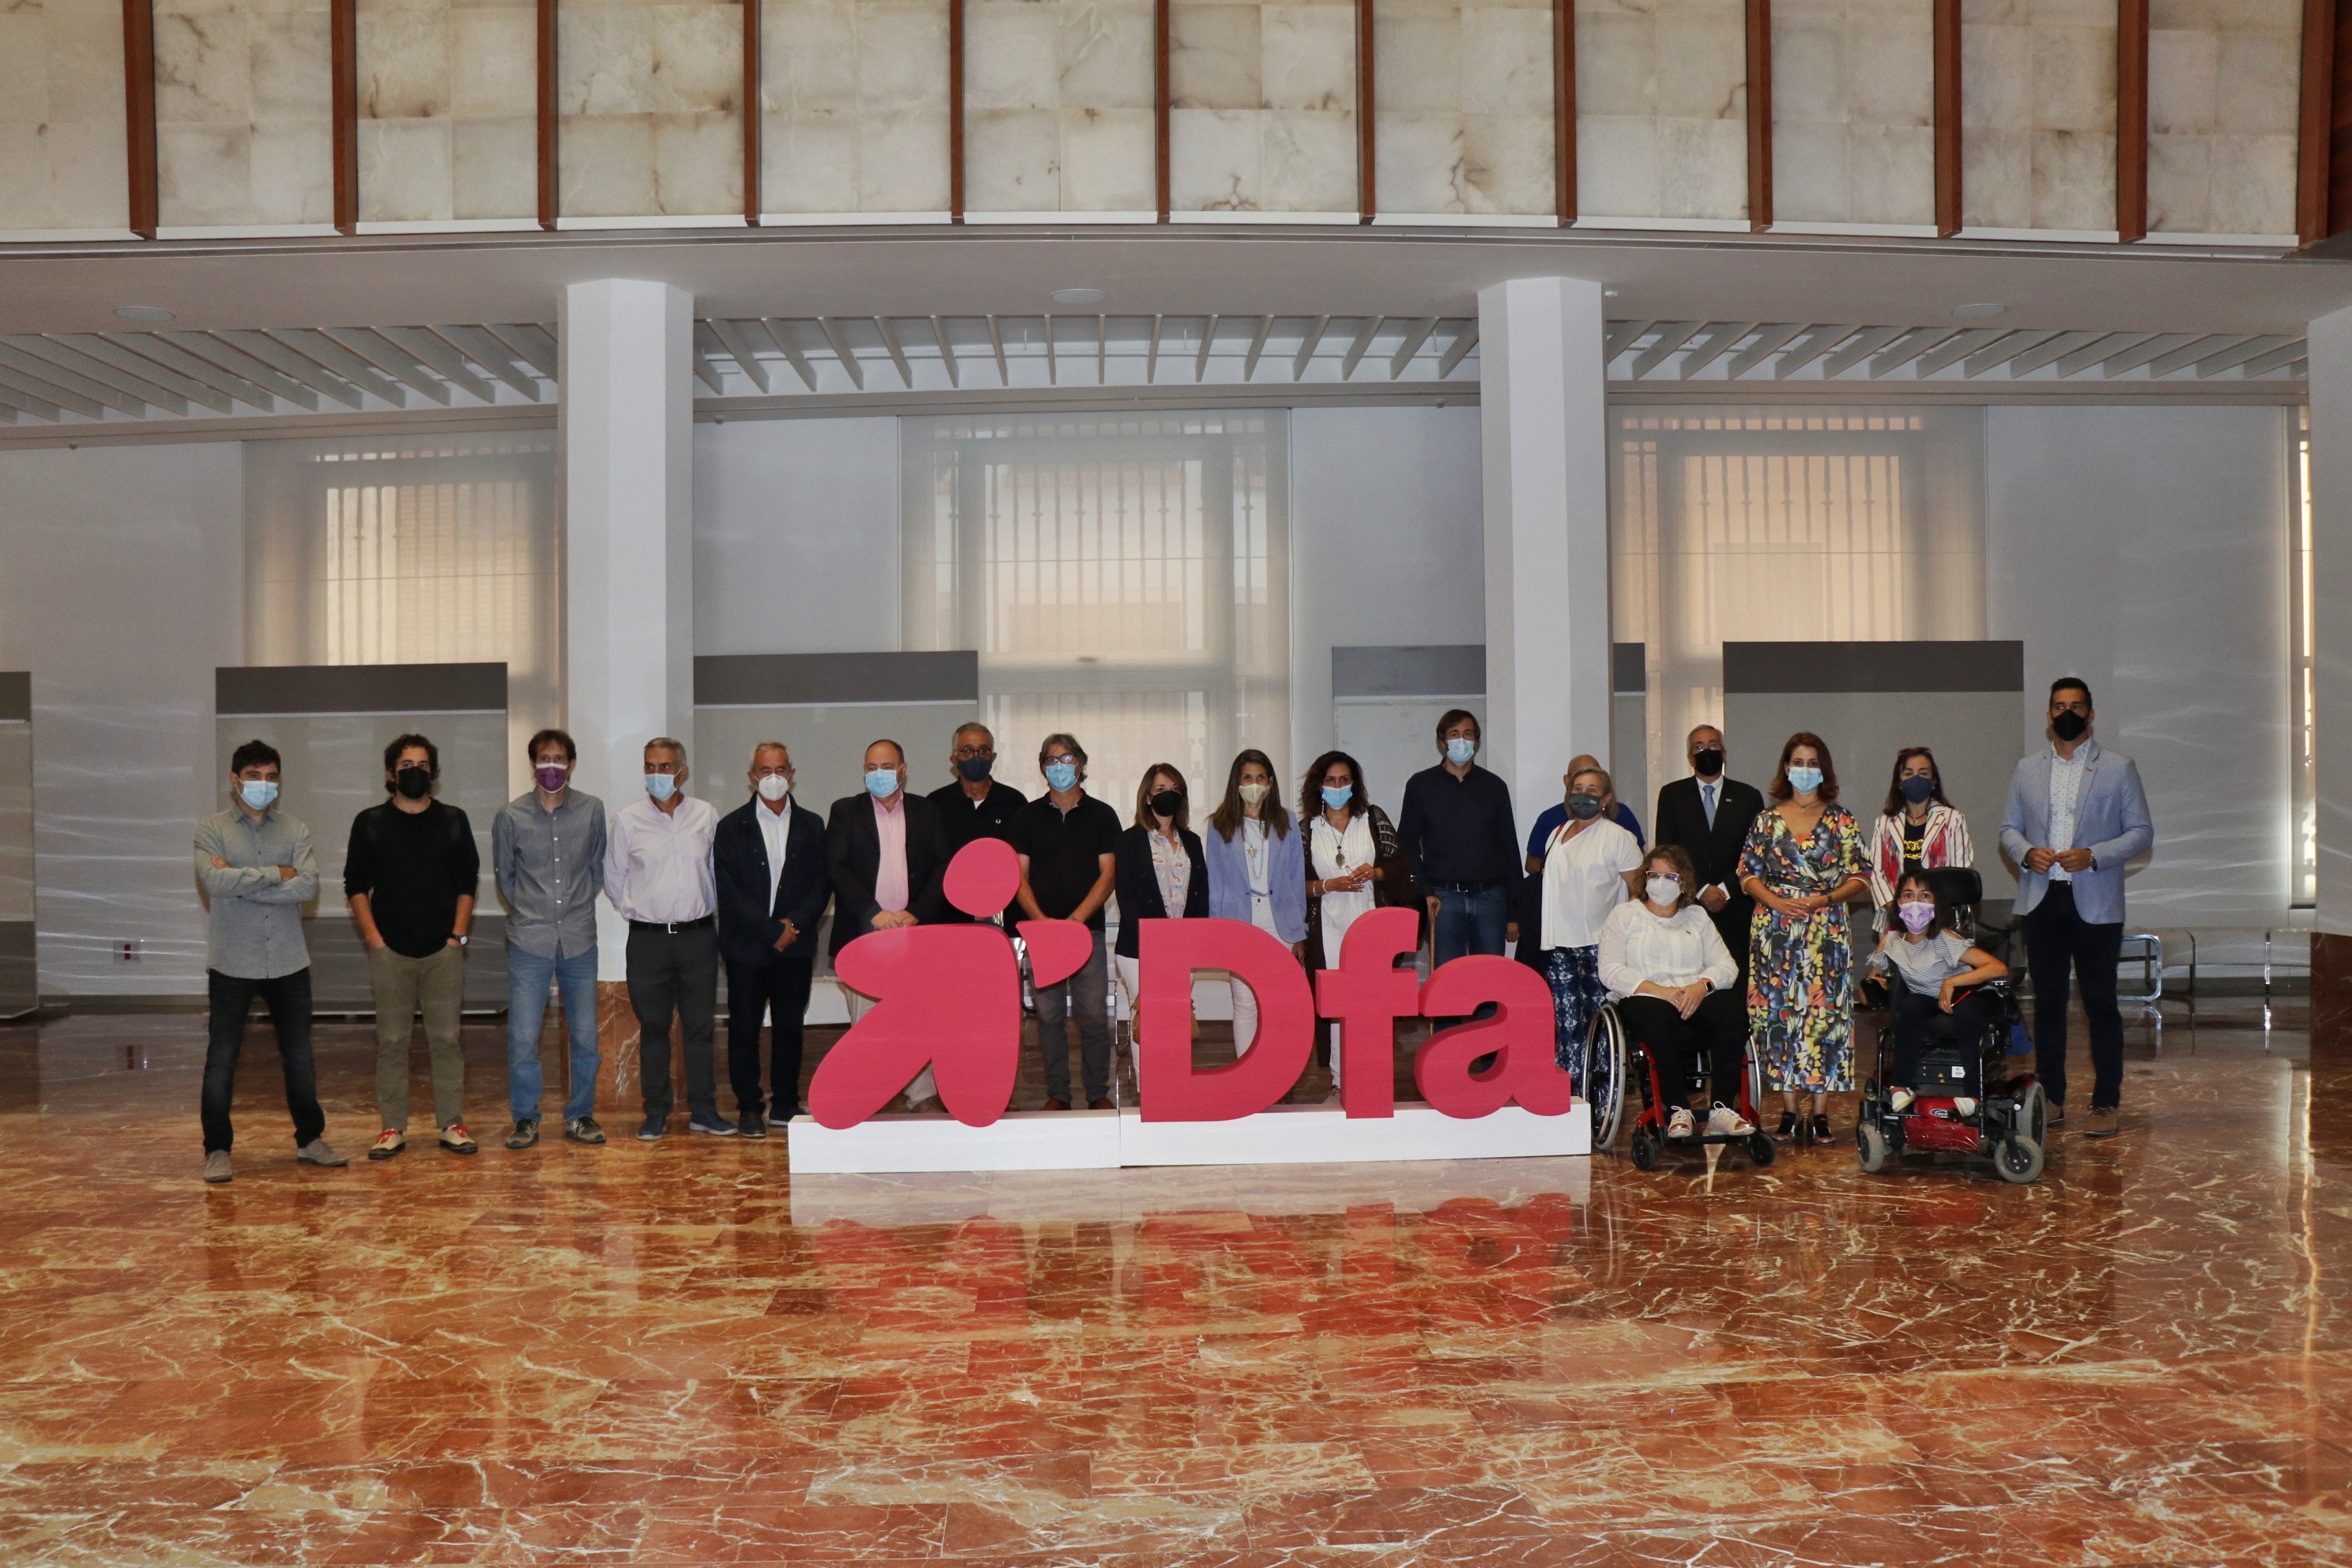 Foto de familia en Teruel con el nuevo logo de Dfa y representantes de instituciones y entidades